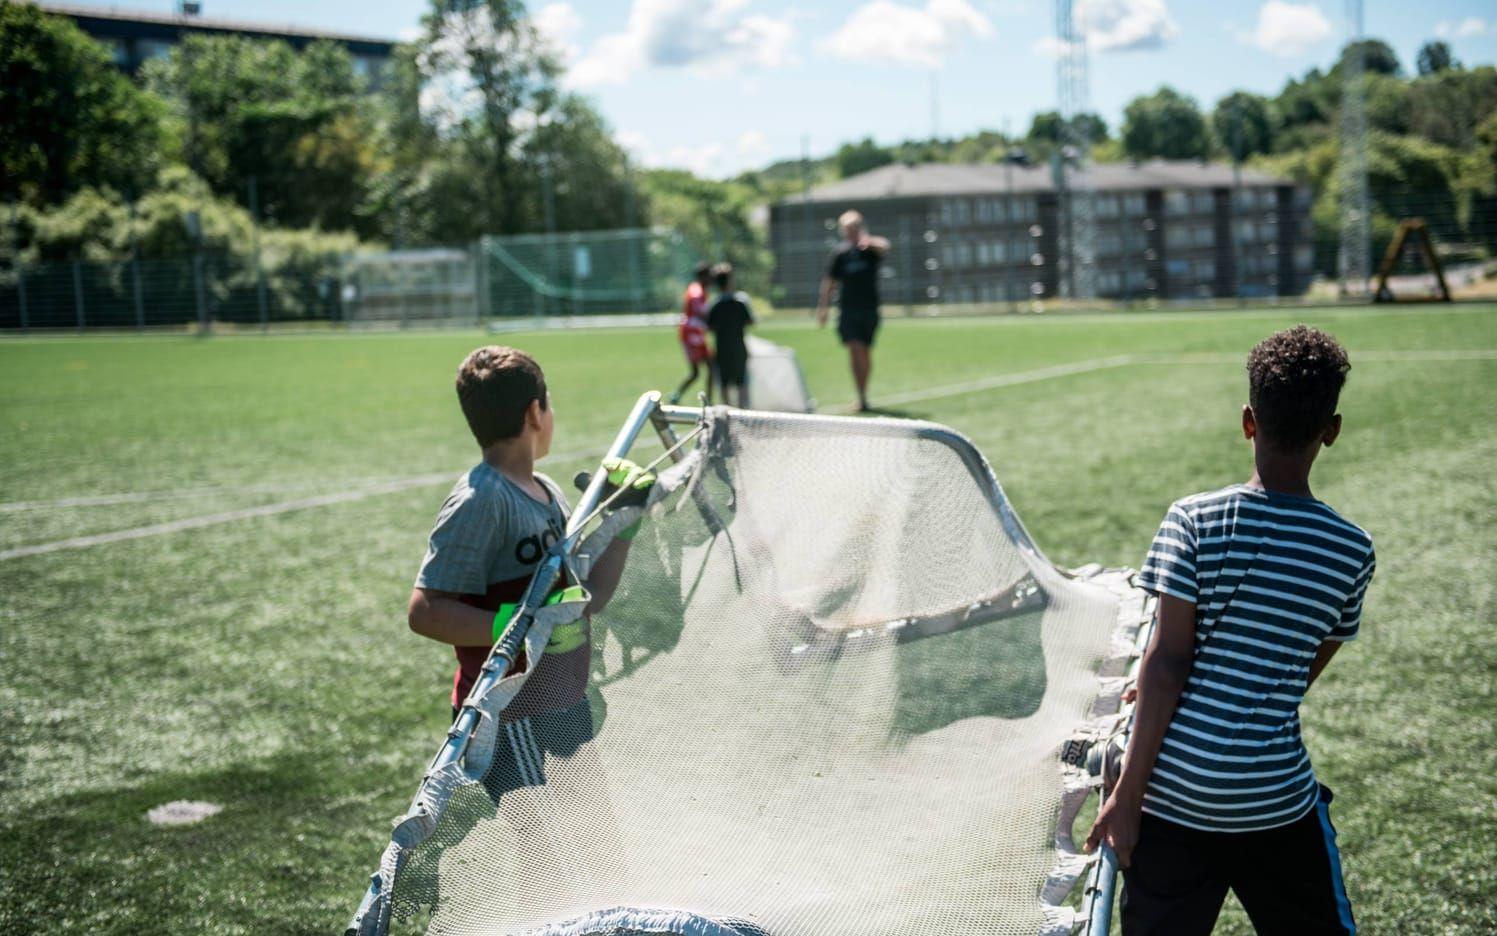 Åtta av tio lag svarade att rasistiska påhopp förekom inom barnfotbollen. Bild: Olof Ohlsson